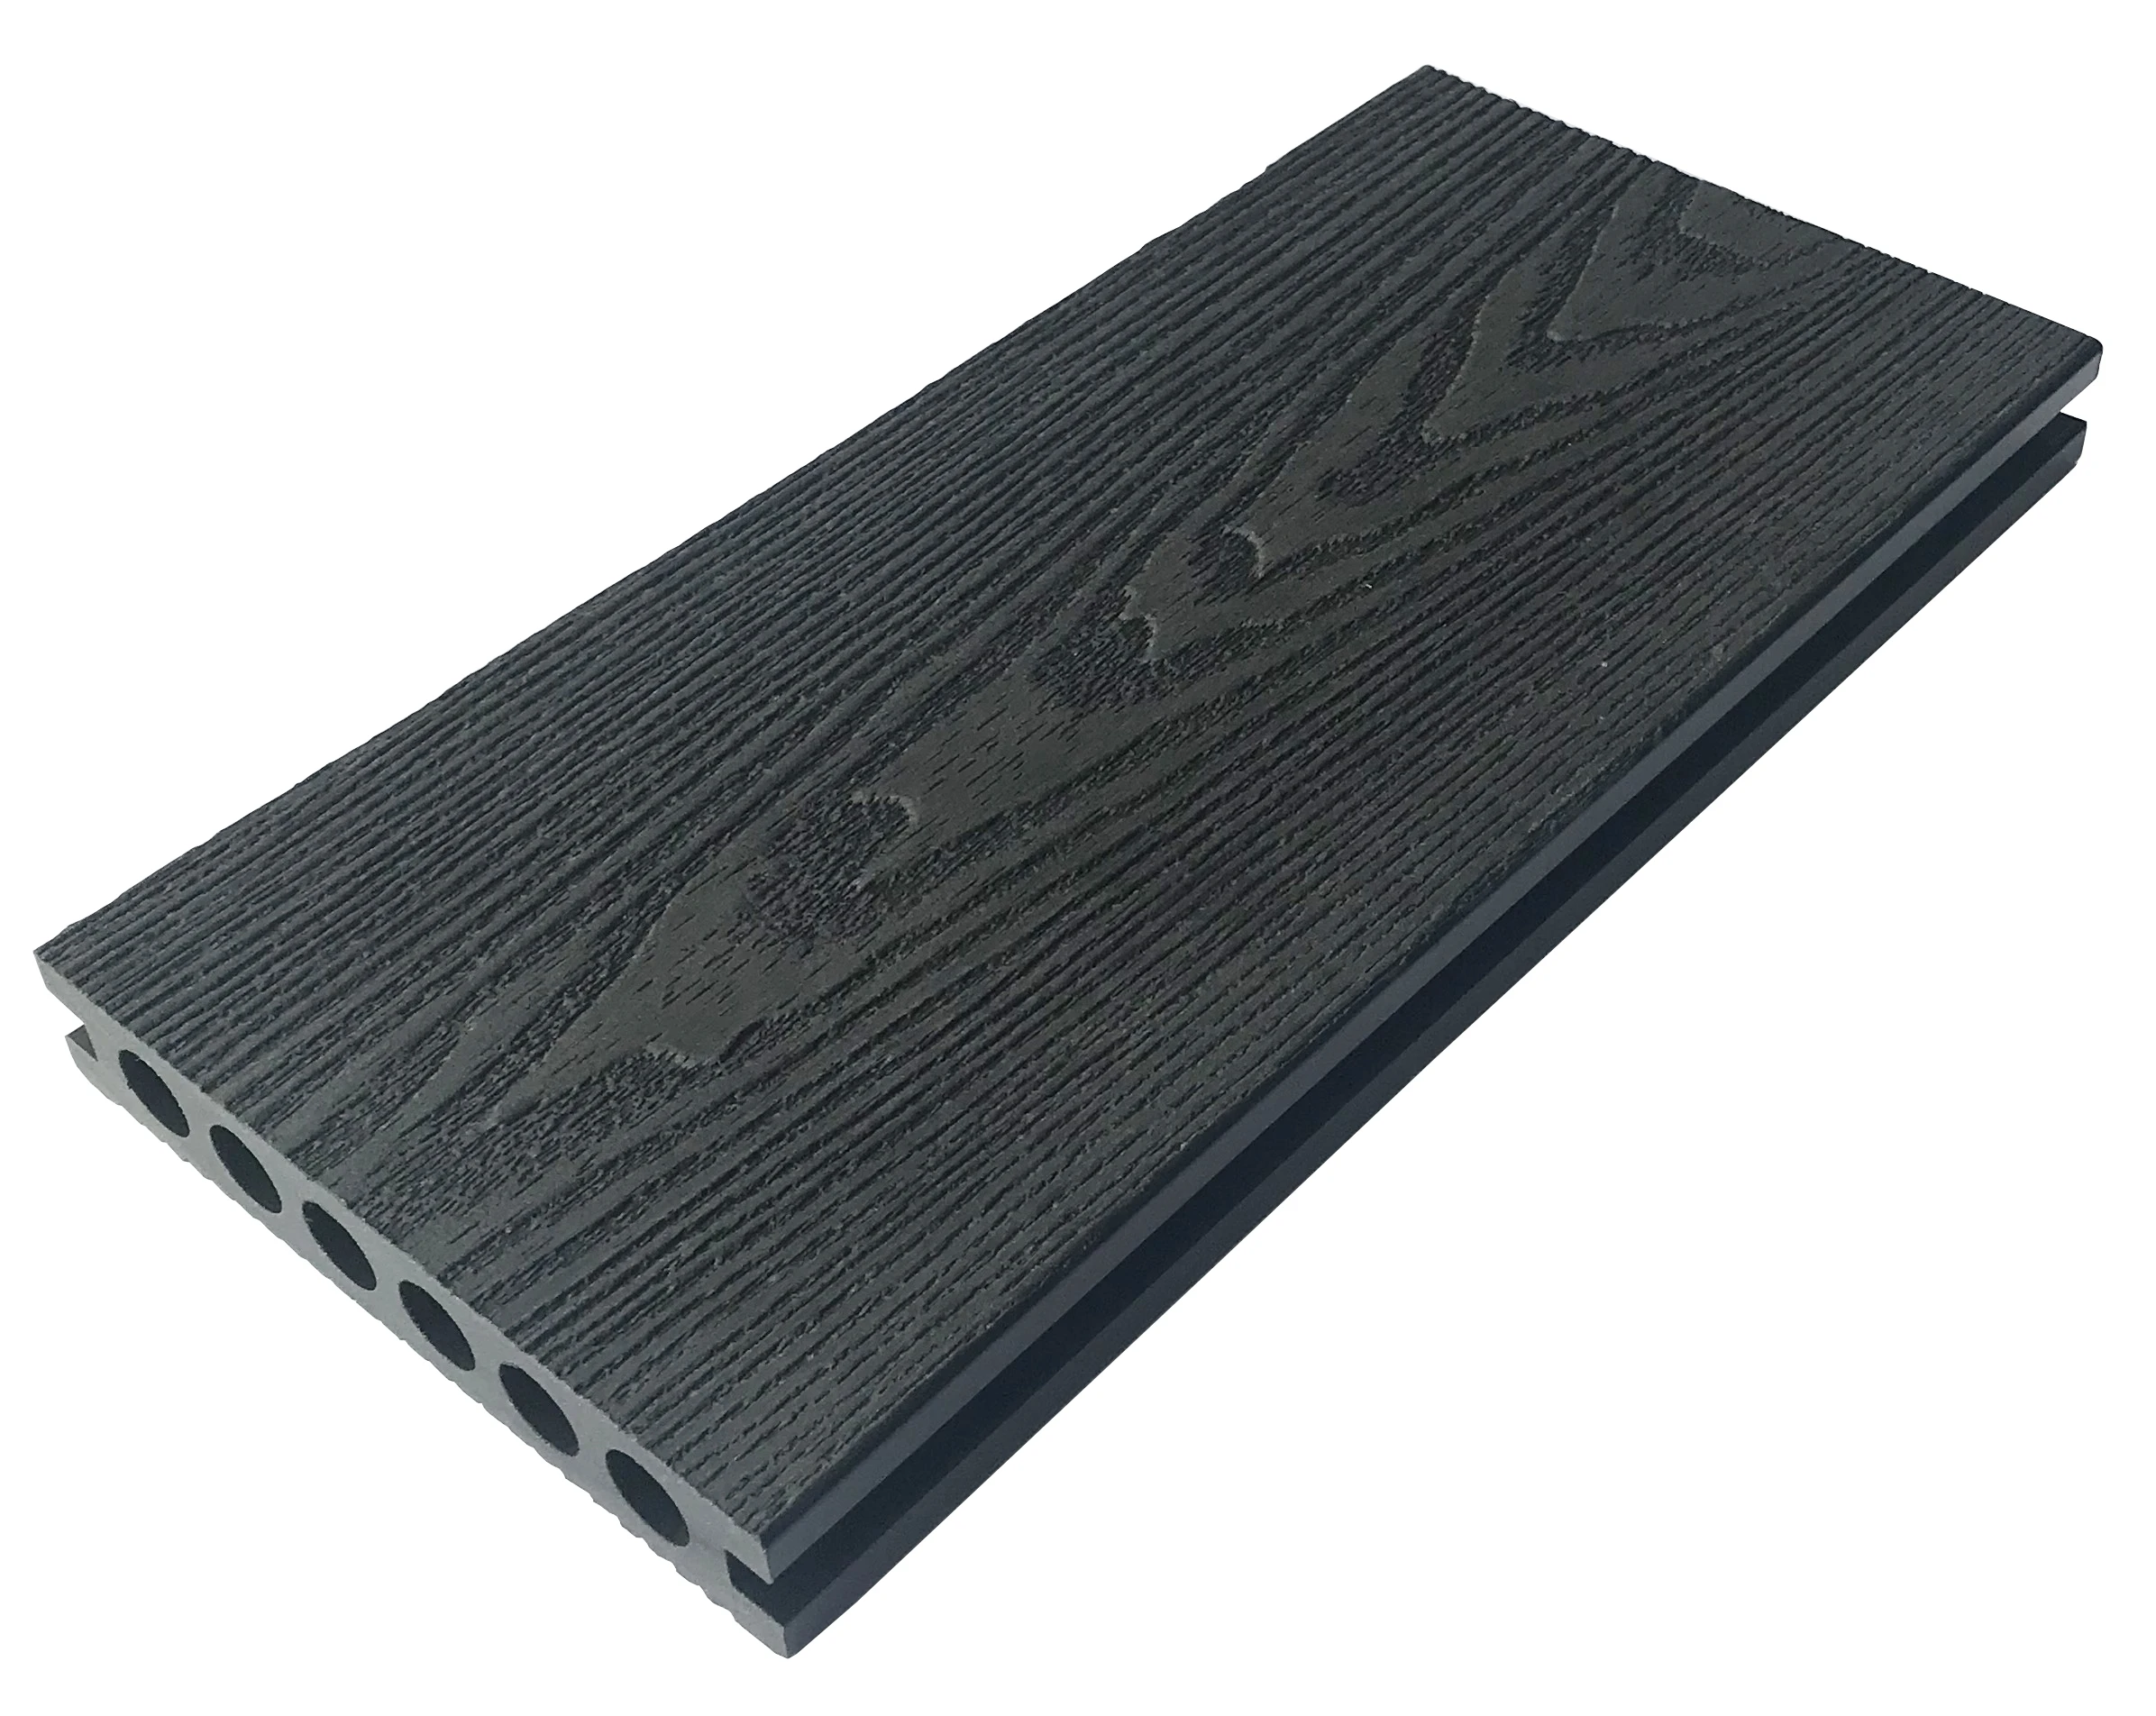 
3D Embossing Black Composite Decking Durable waterproof recycled 3D deep embossed wps engineered decking 